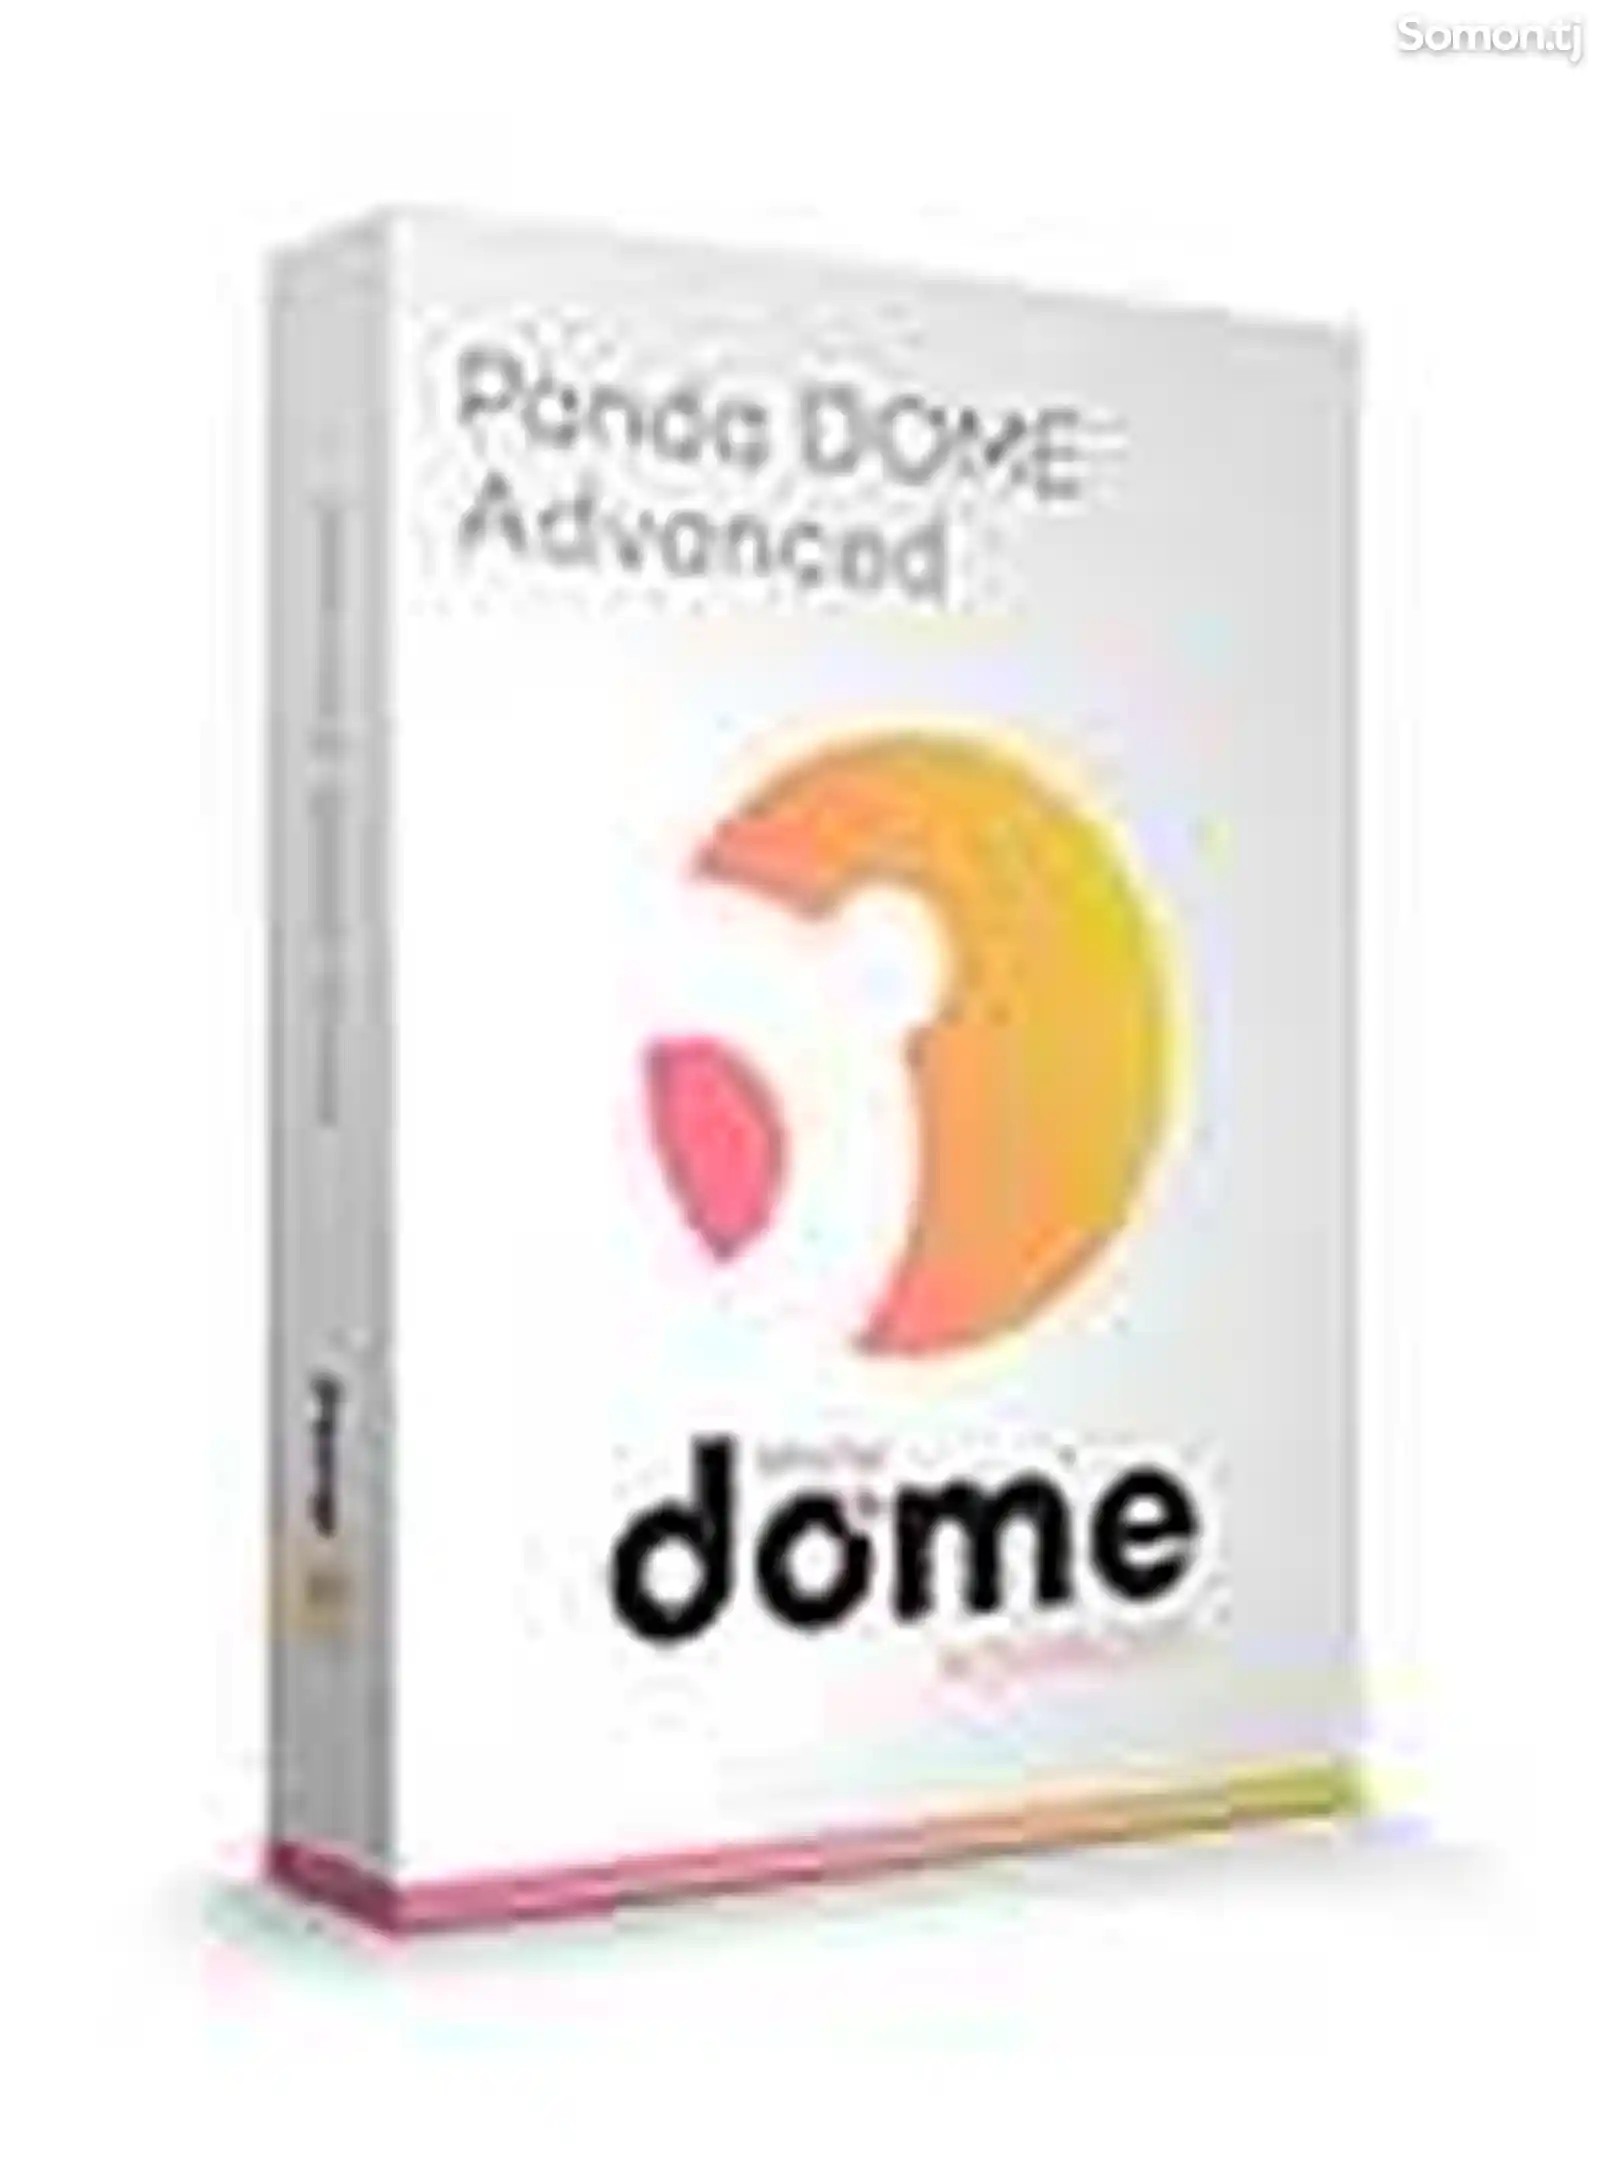 Panda Dome Advanced - иҷозатнома барои 1 роёна, 1 сол